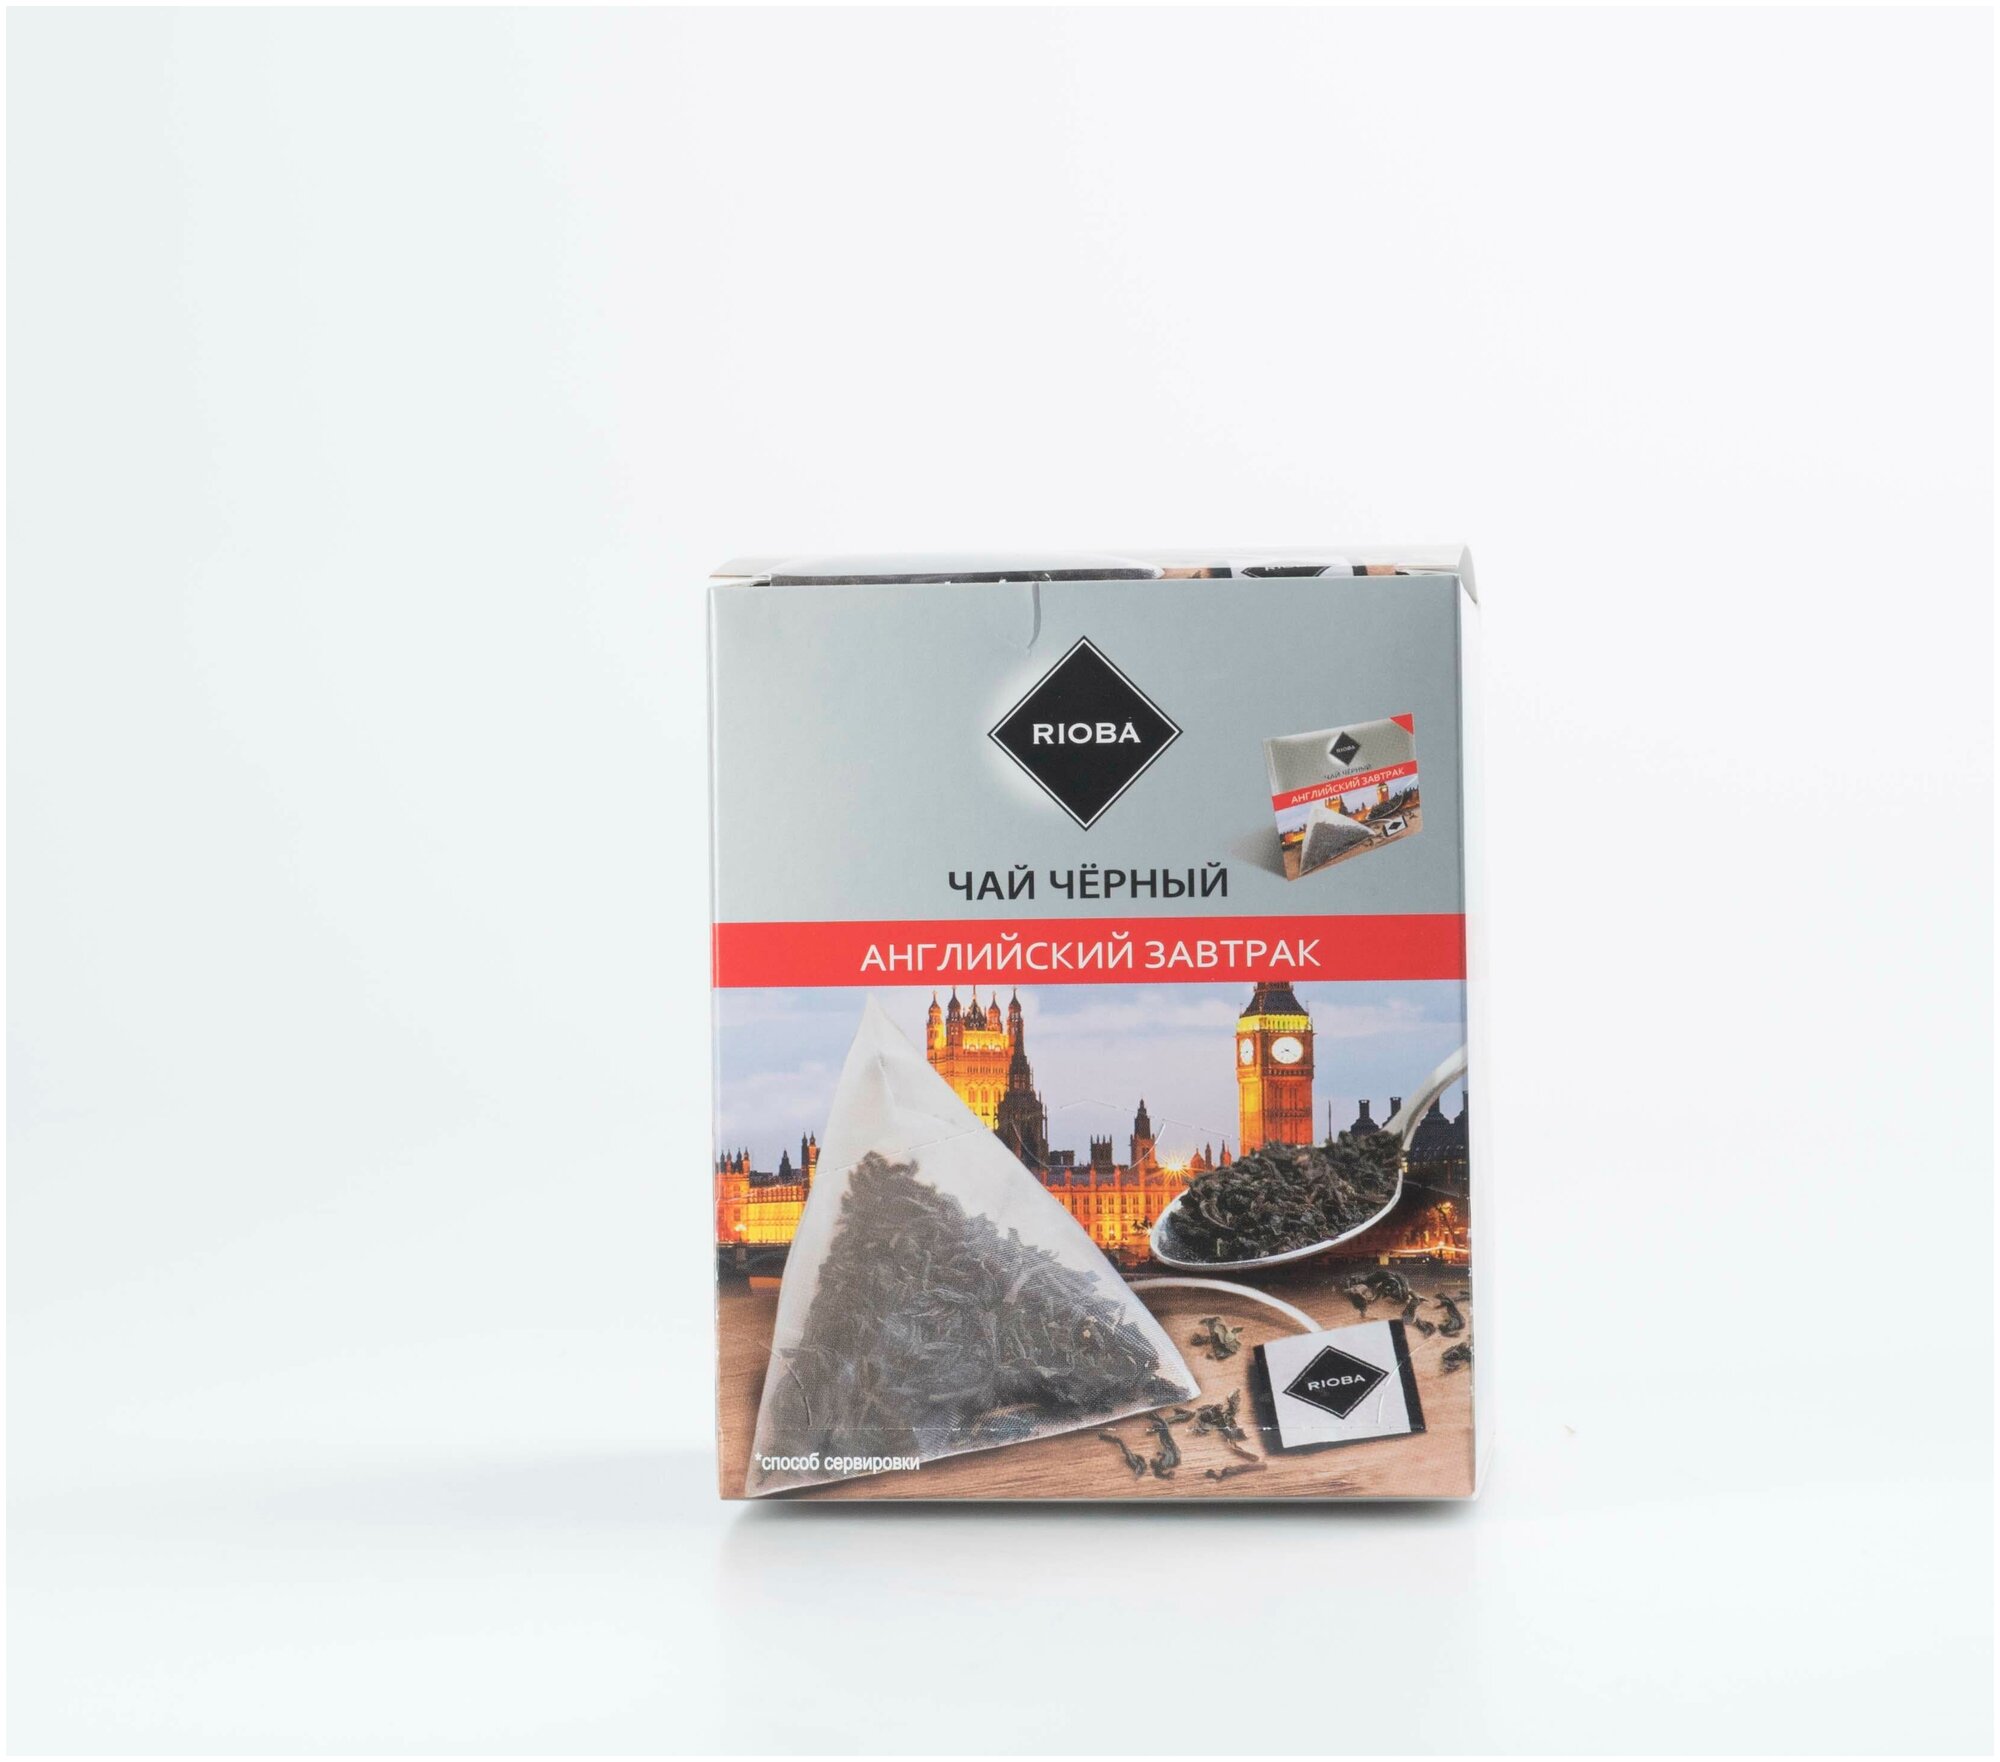 Чай черный RIOBA Английский завтрак, в пирамидках, 2 г × 20 шт.